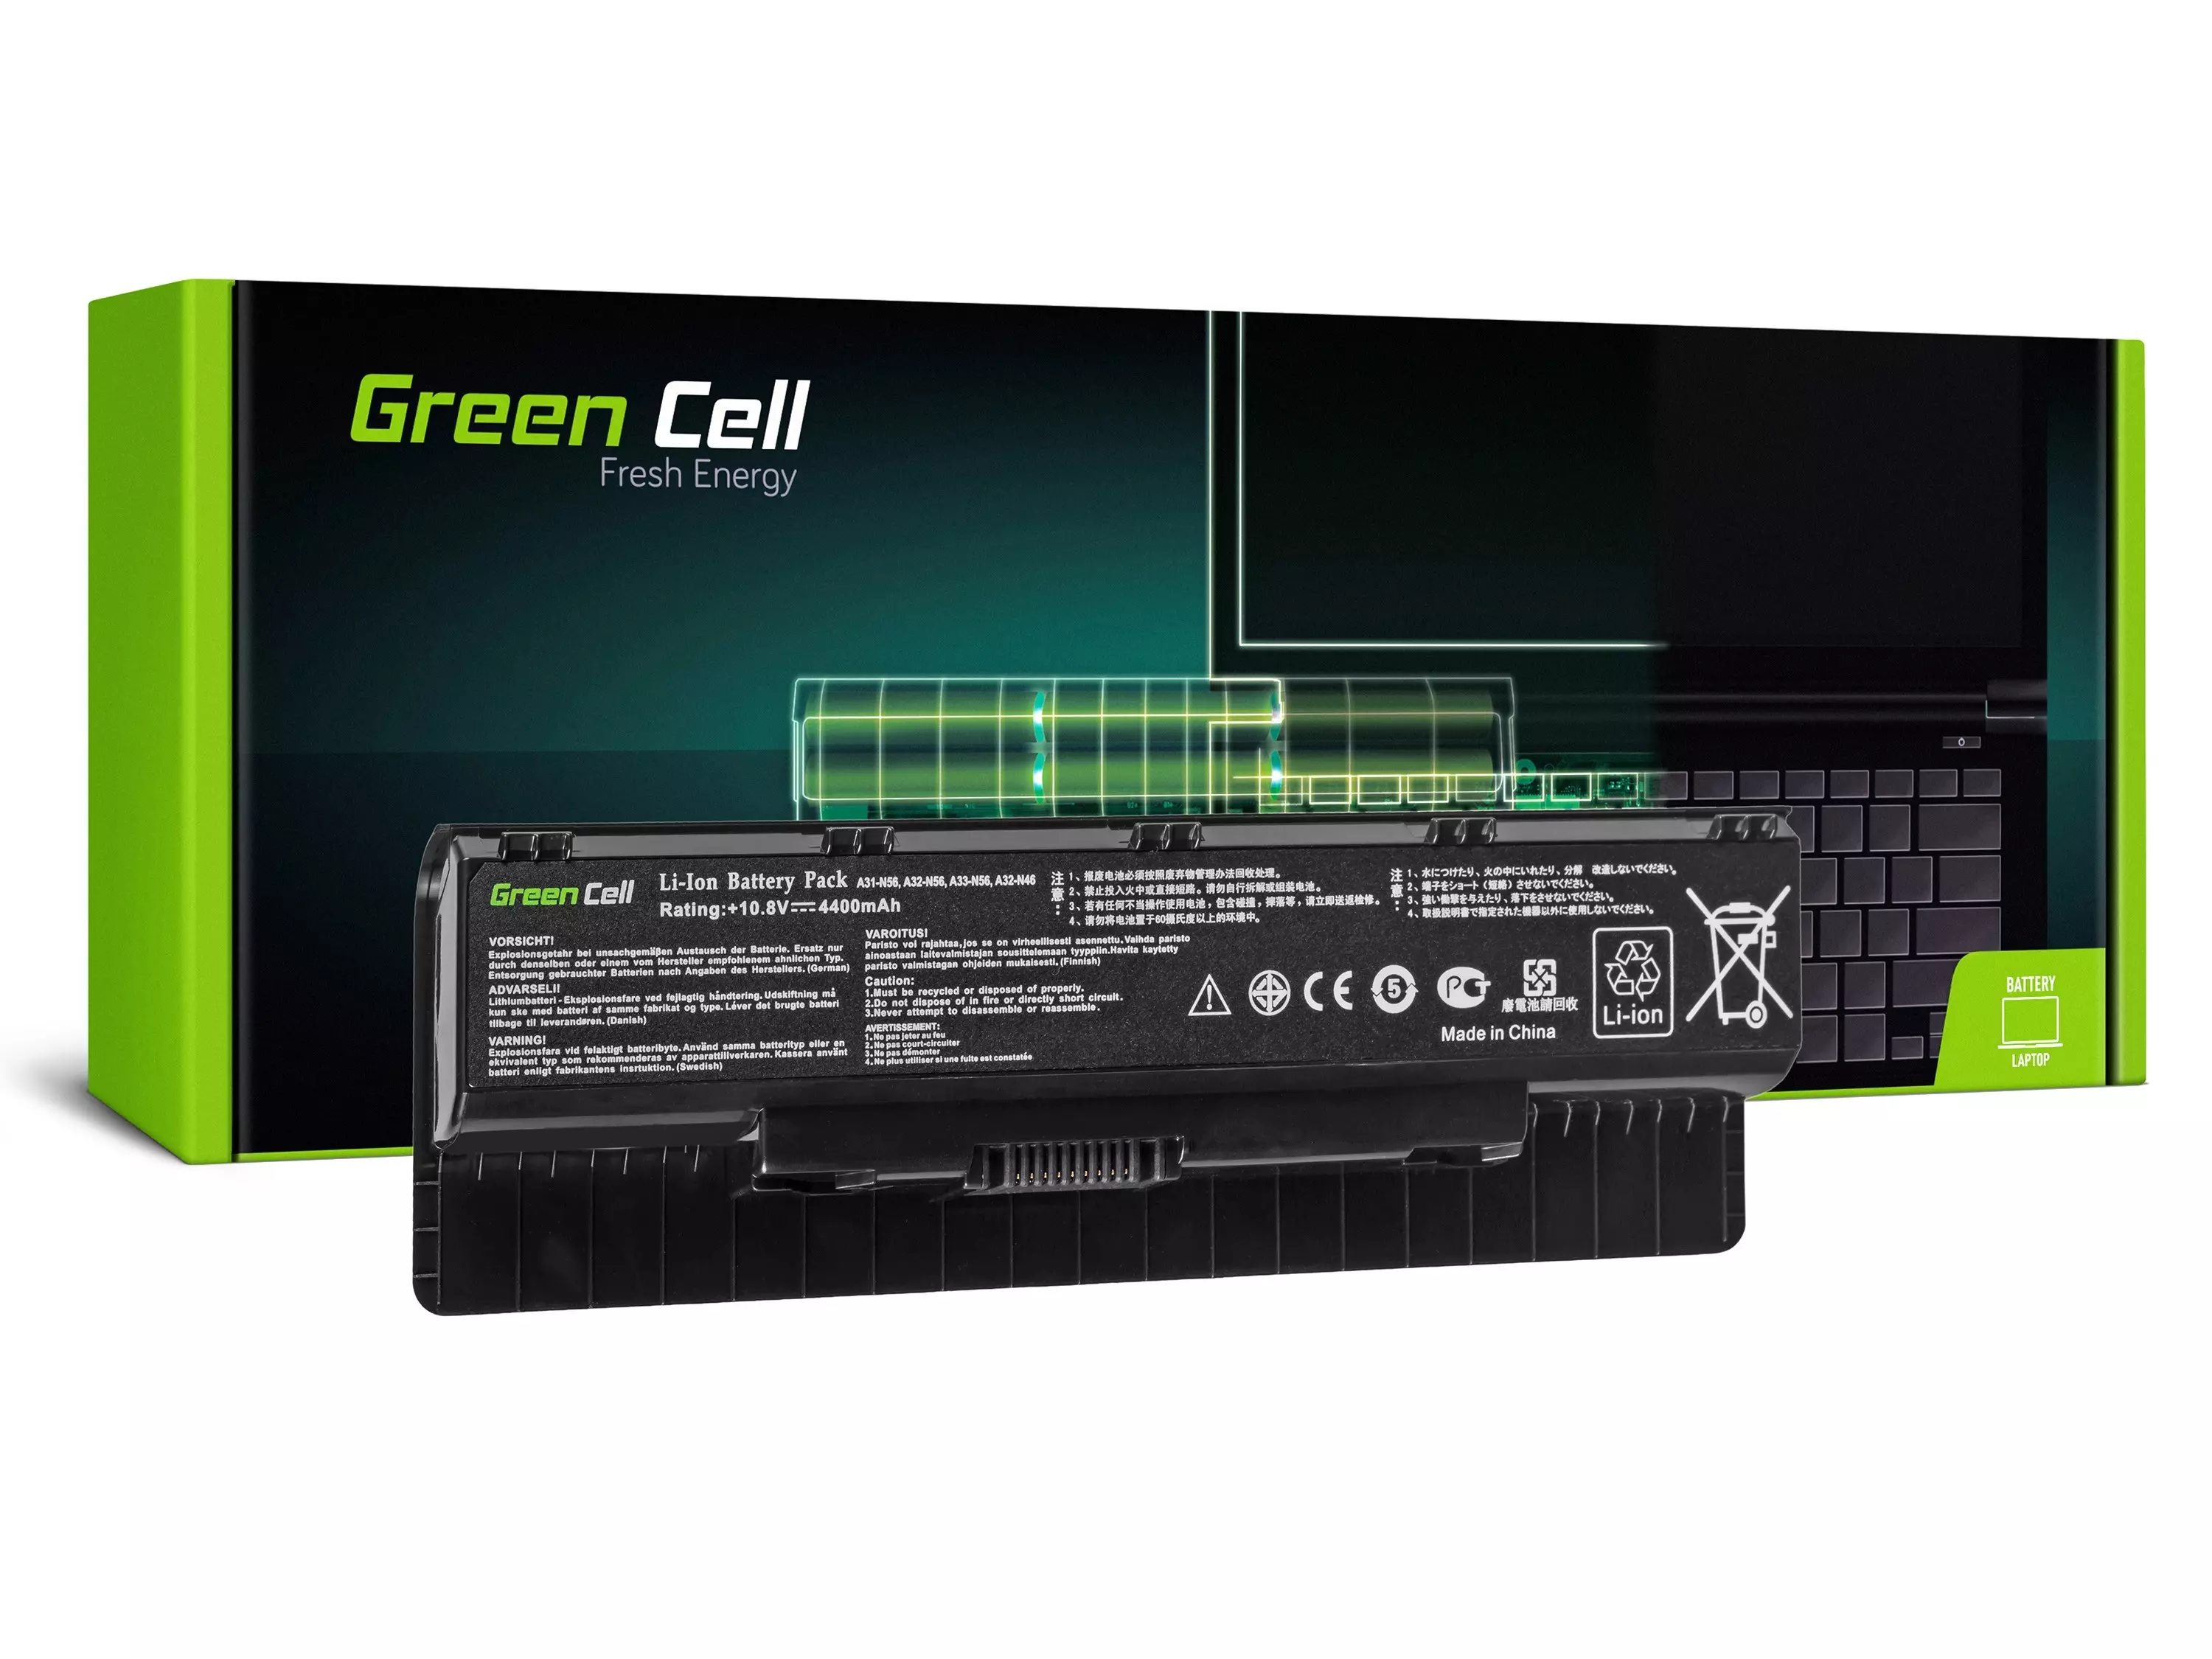 Green Cell Battery for Asus A32-N56 N46 N46V N56 N76 / 11,1V 4400mAh